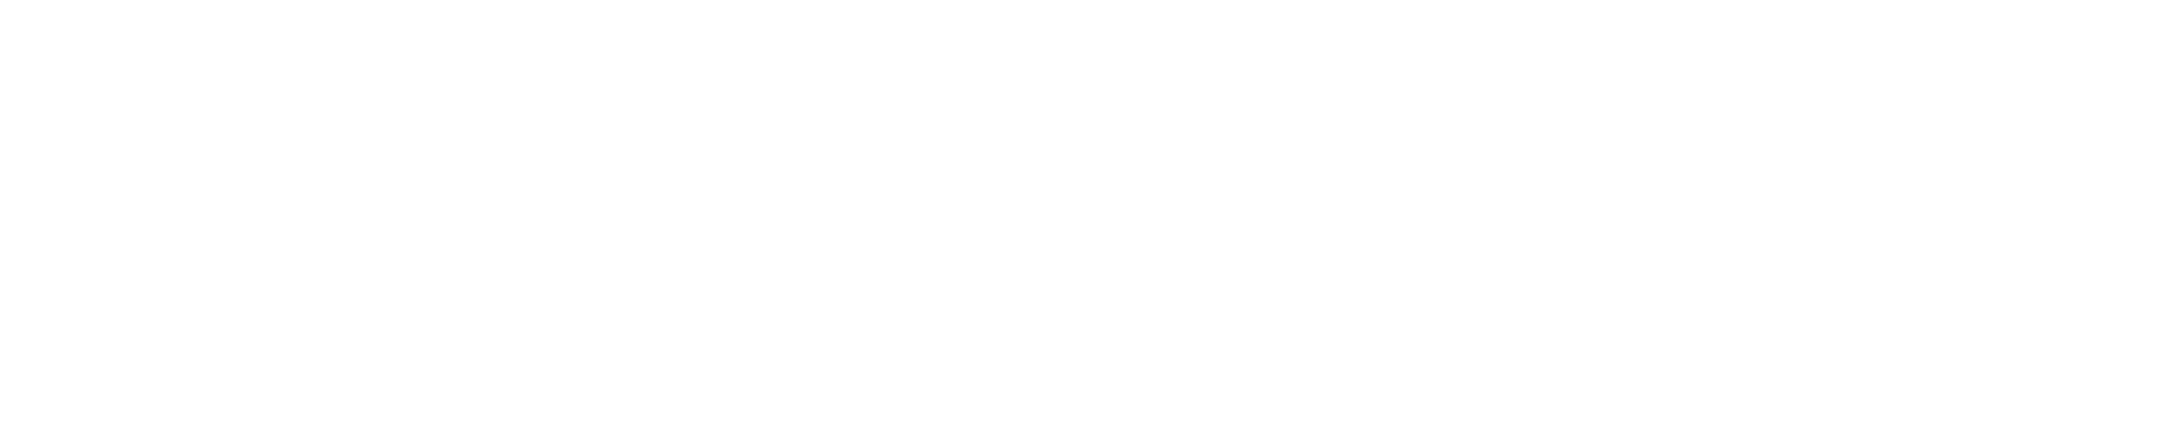 future chicken awards - Best story - Best Animation - Best Short Film